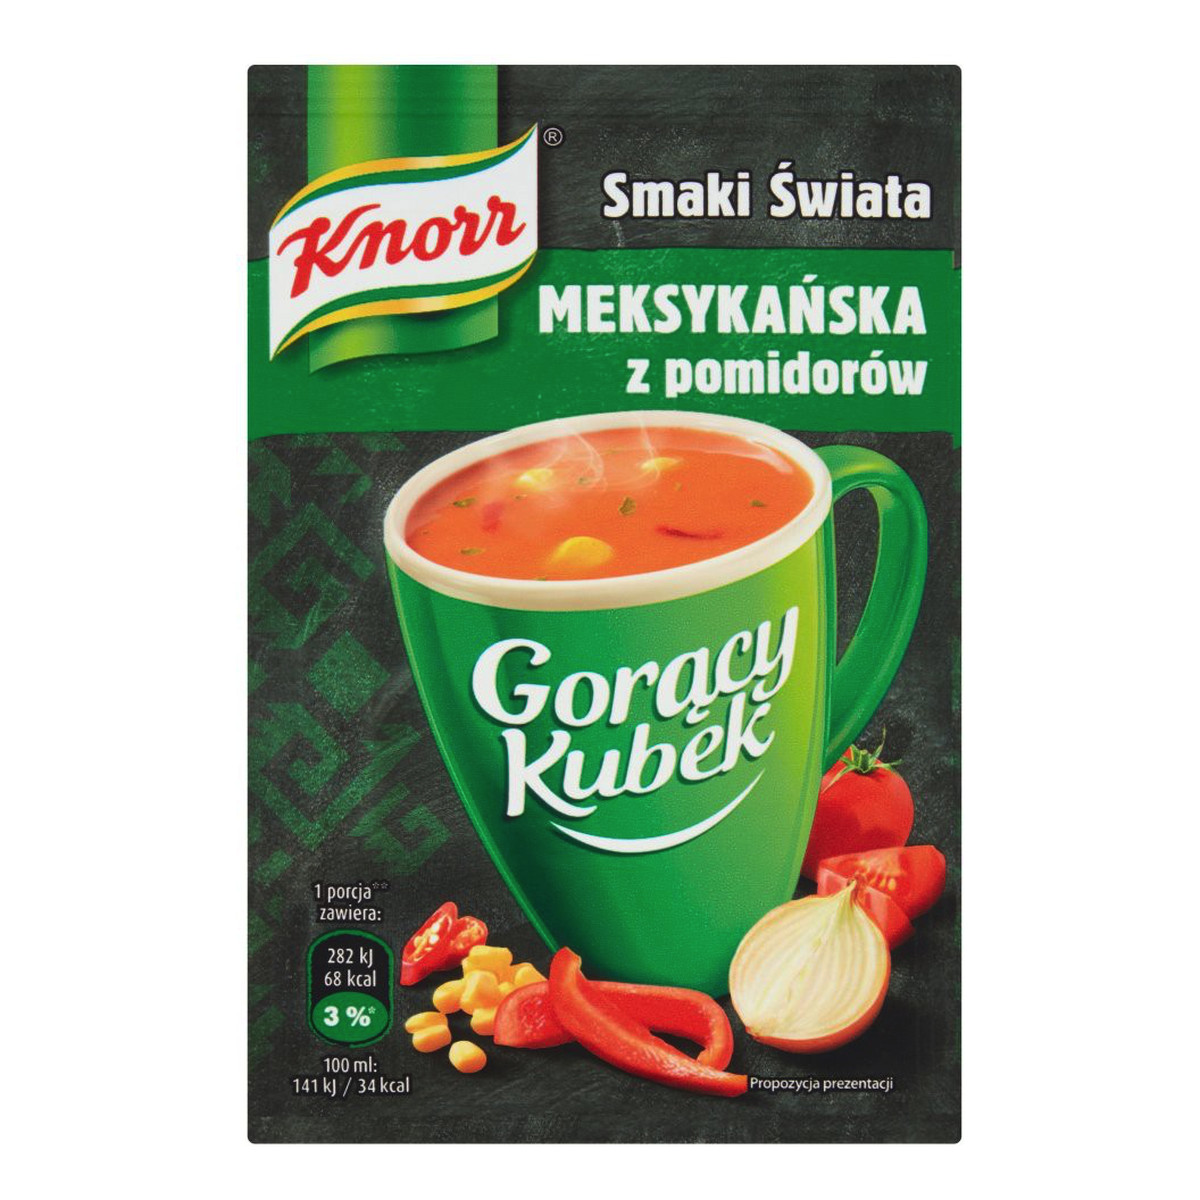 Knorr Gorący Kubek Smaki Świata Meksykańska z pomidorów 18g